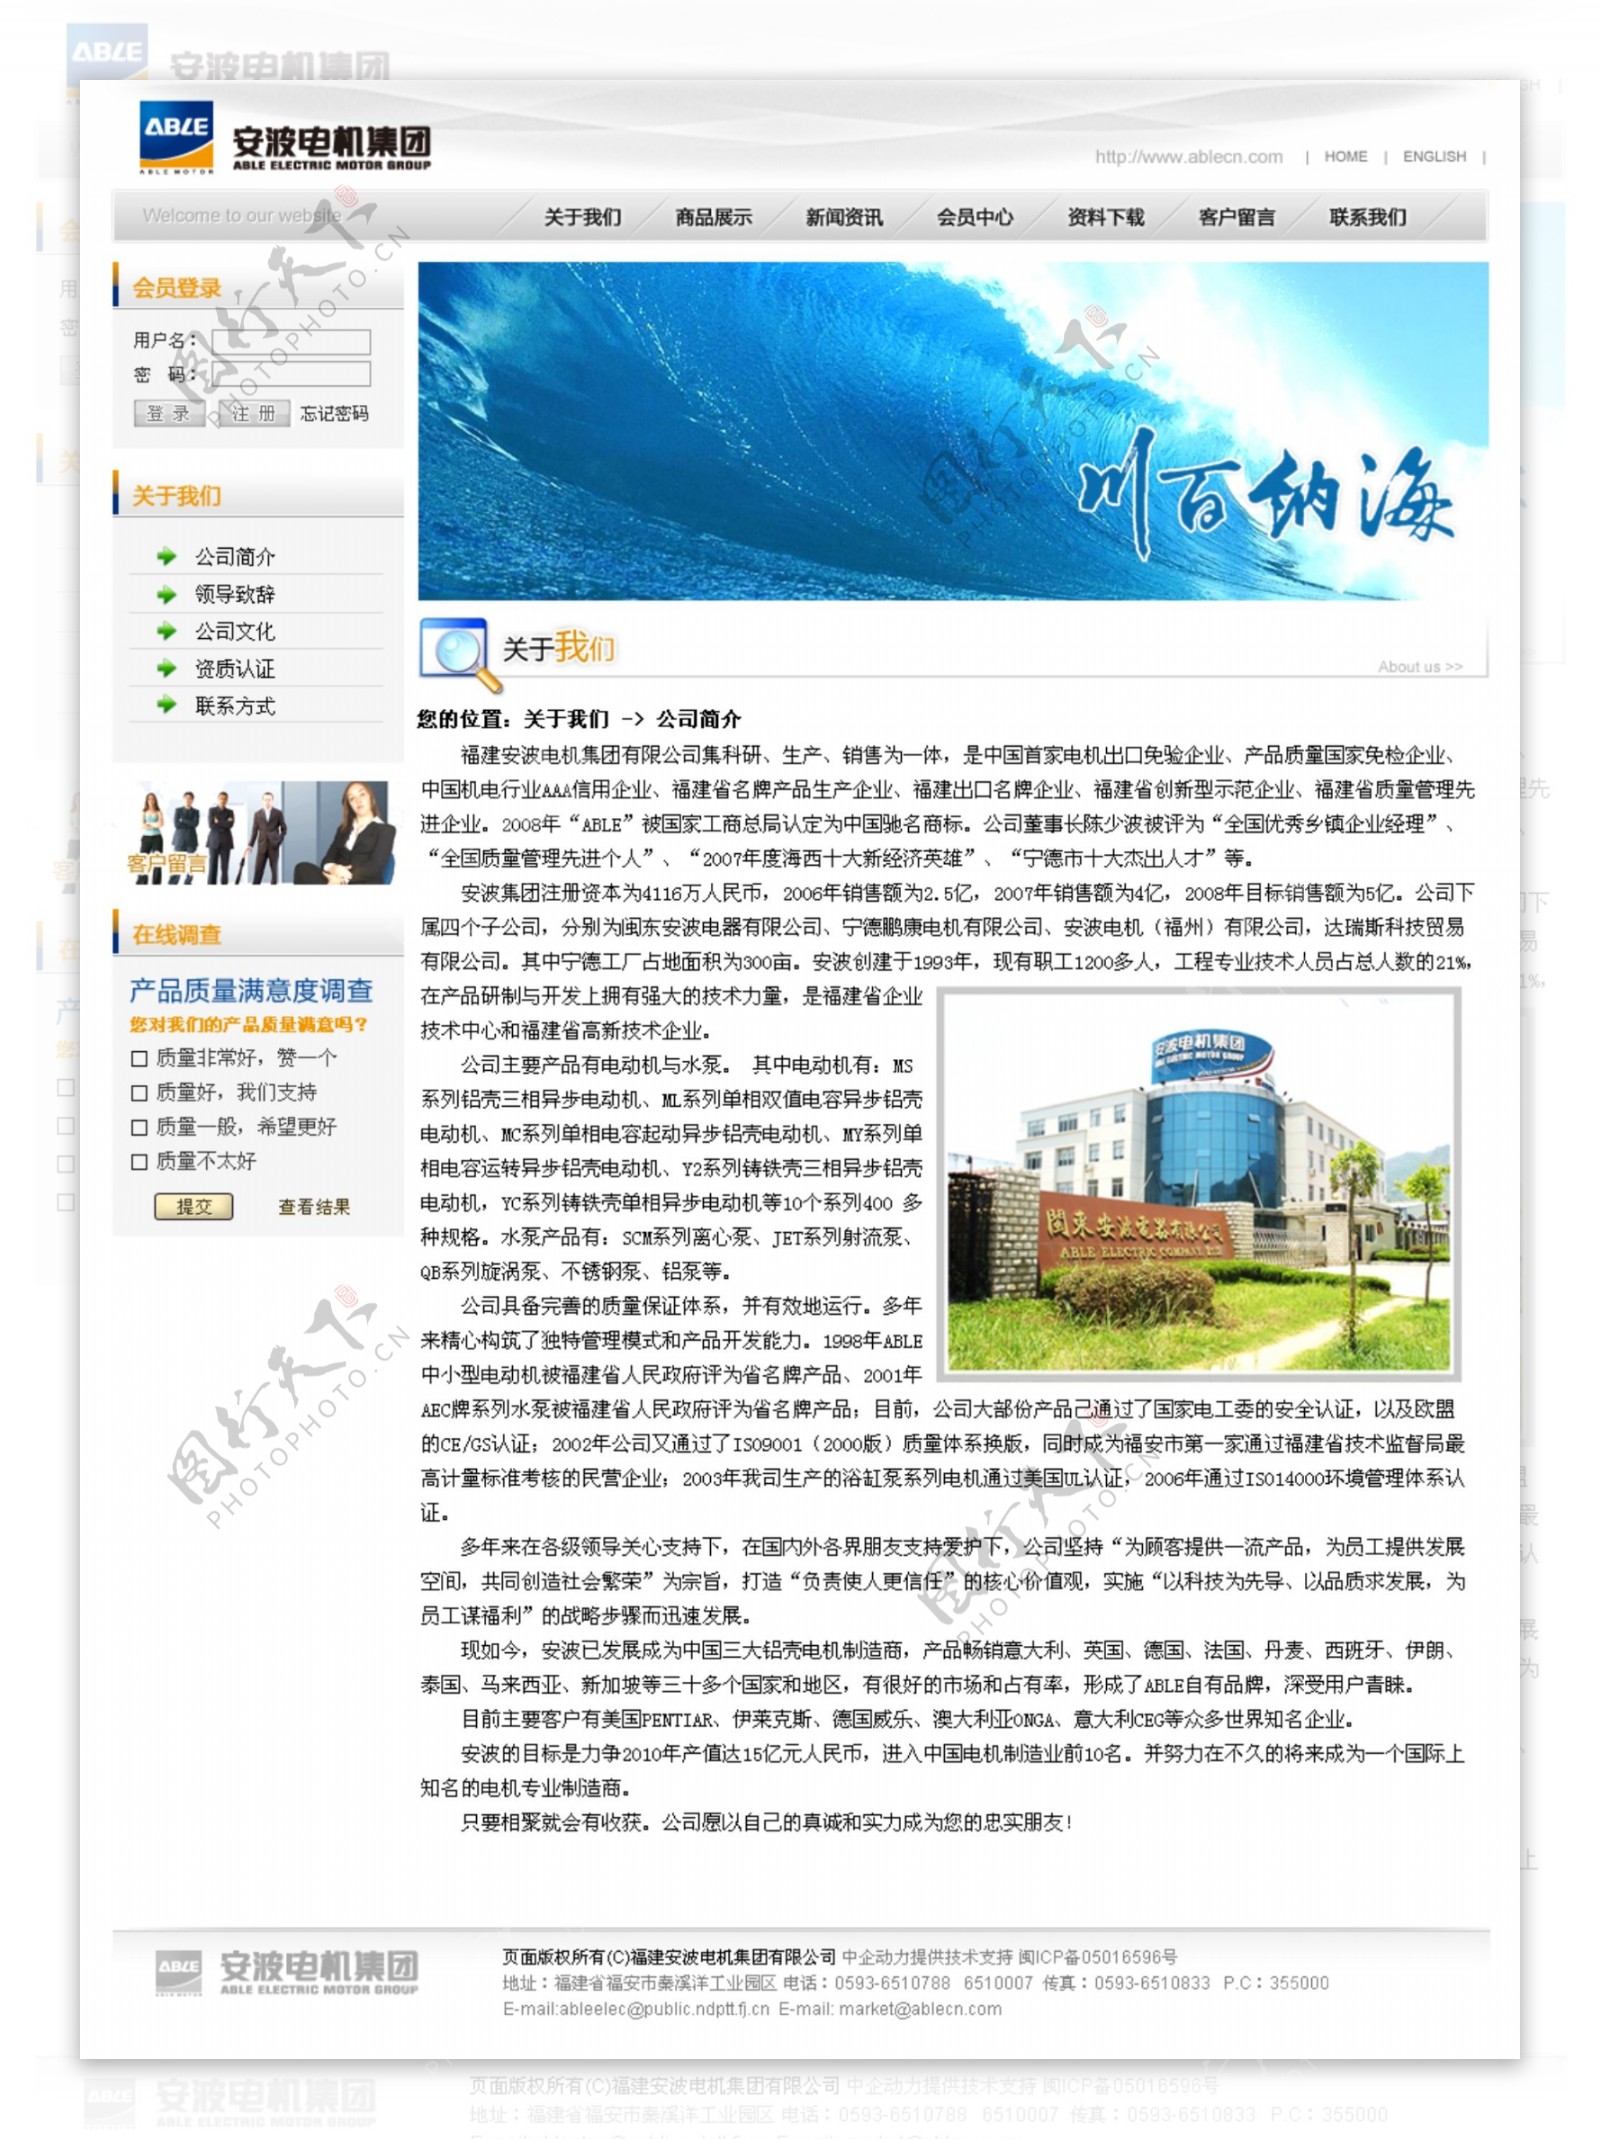 中文网页模板内页图片